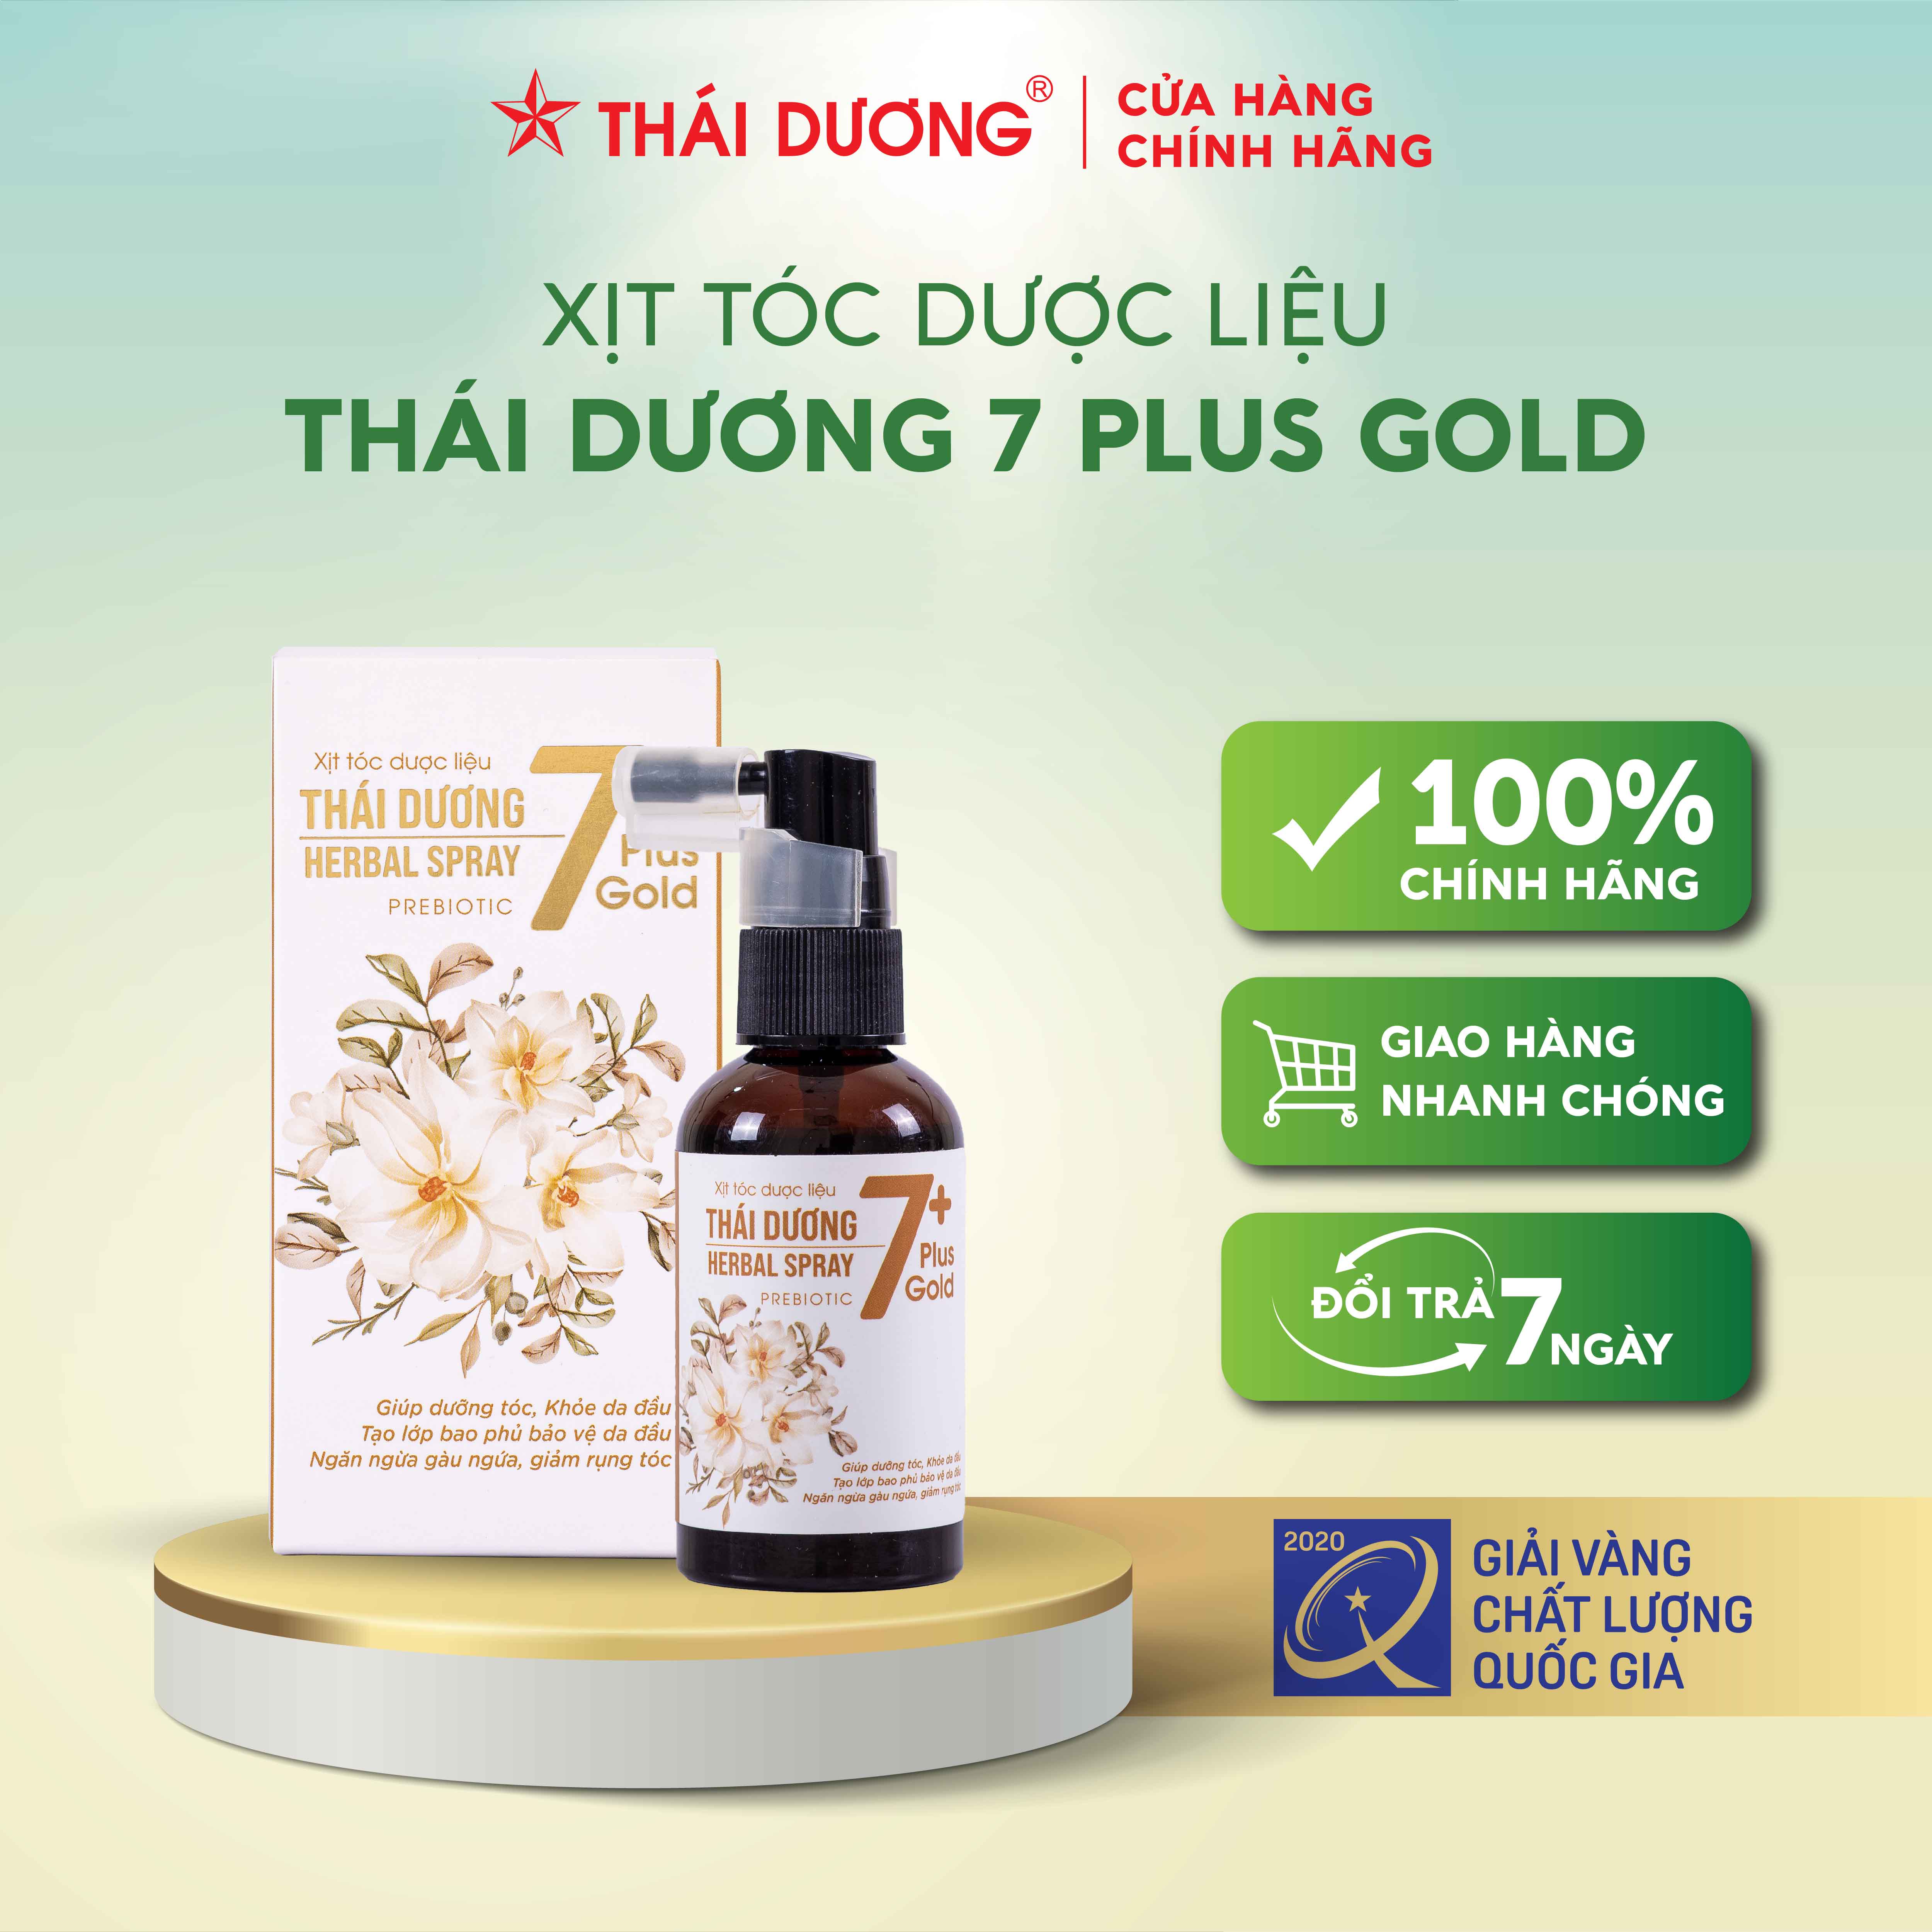 Xịt tóc dược liệu Thái Dương 7 Plus Gold - Sao Thái Dương